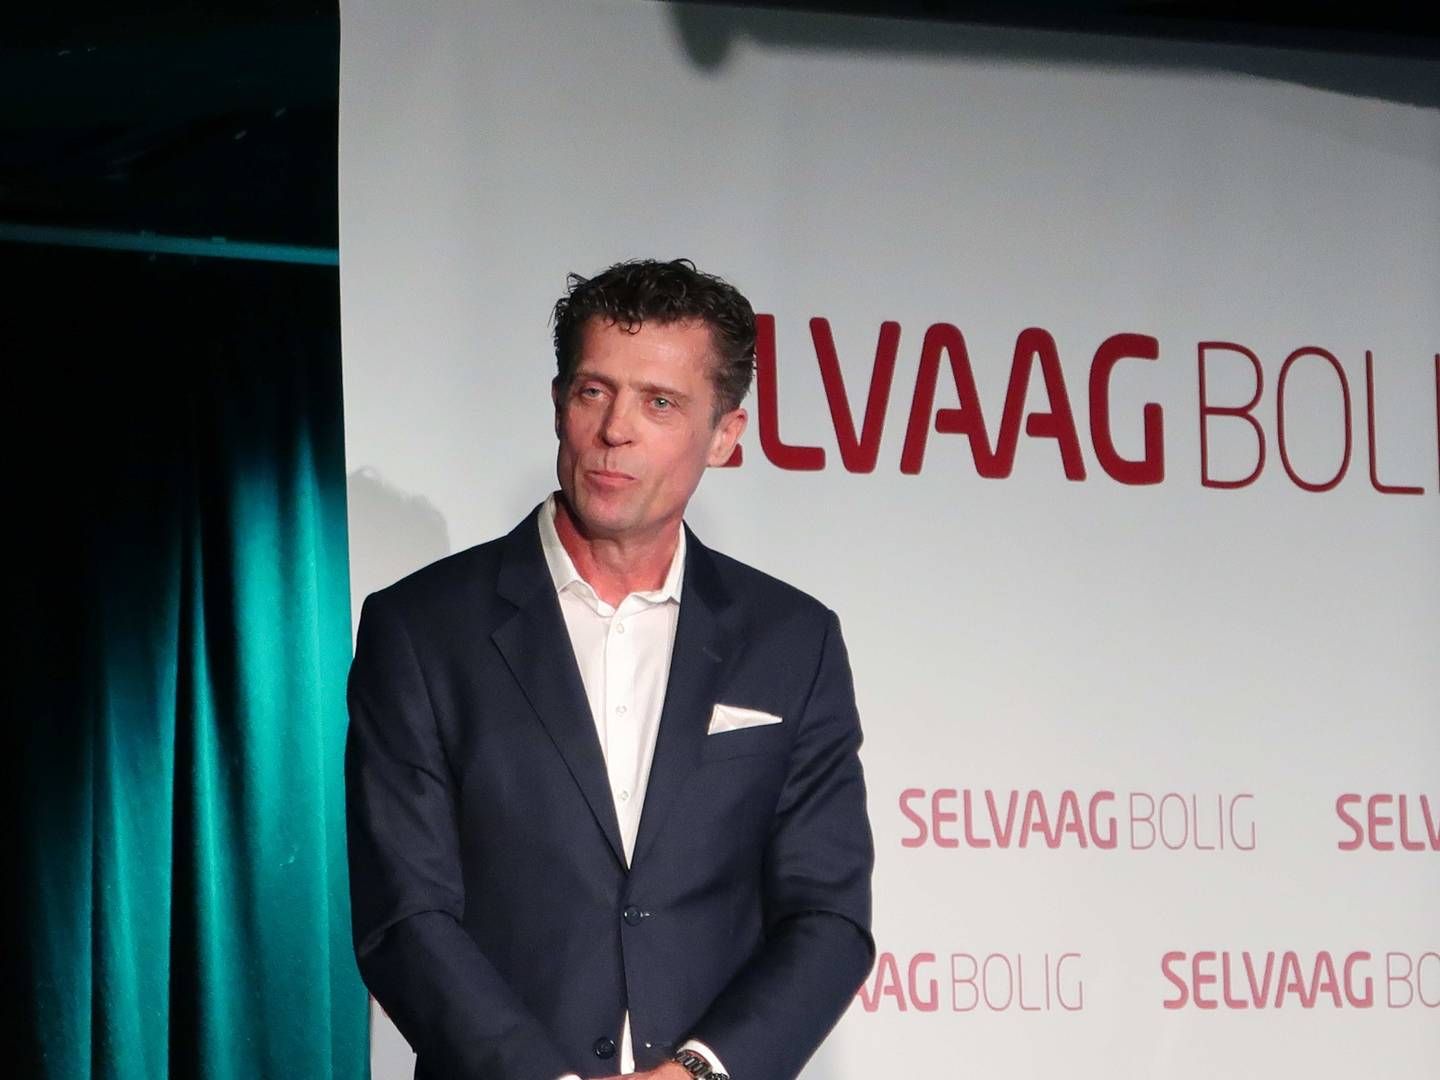 DYRT, MEN BEDRE: Selvaag Bolig-sjef Sverre Molvik gleder seg over sine nyeste salgstall, selv om det er krevende å drive med boligbygging gjennom dyrtid. | Foto: Øystein Byberg